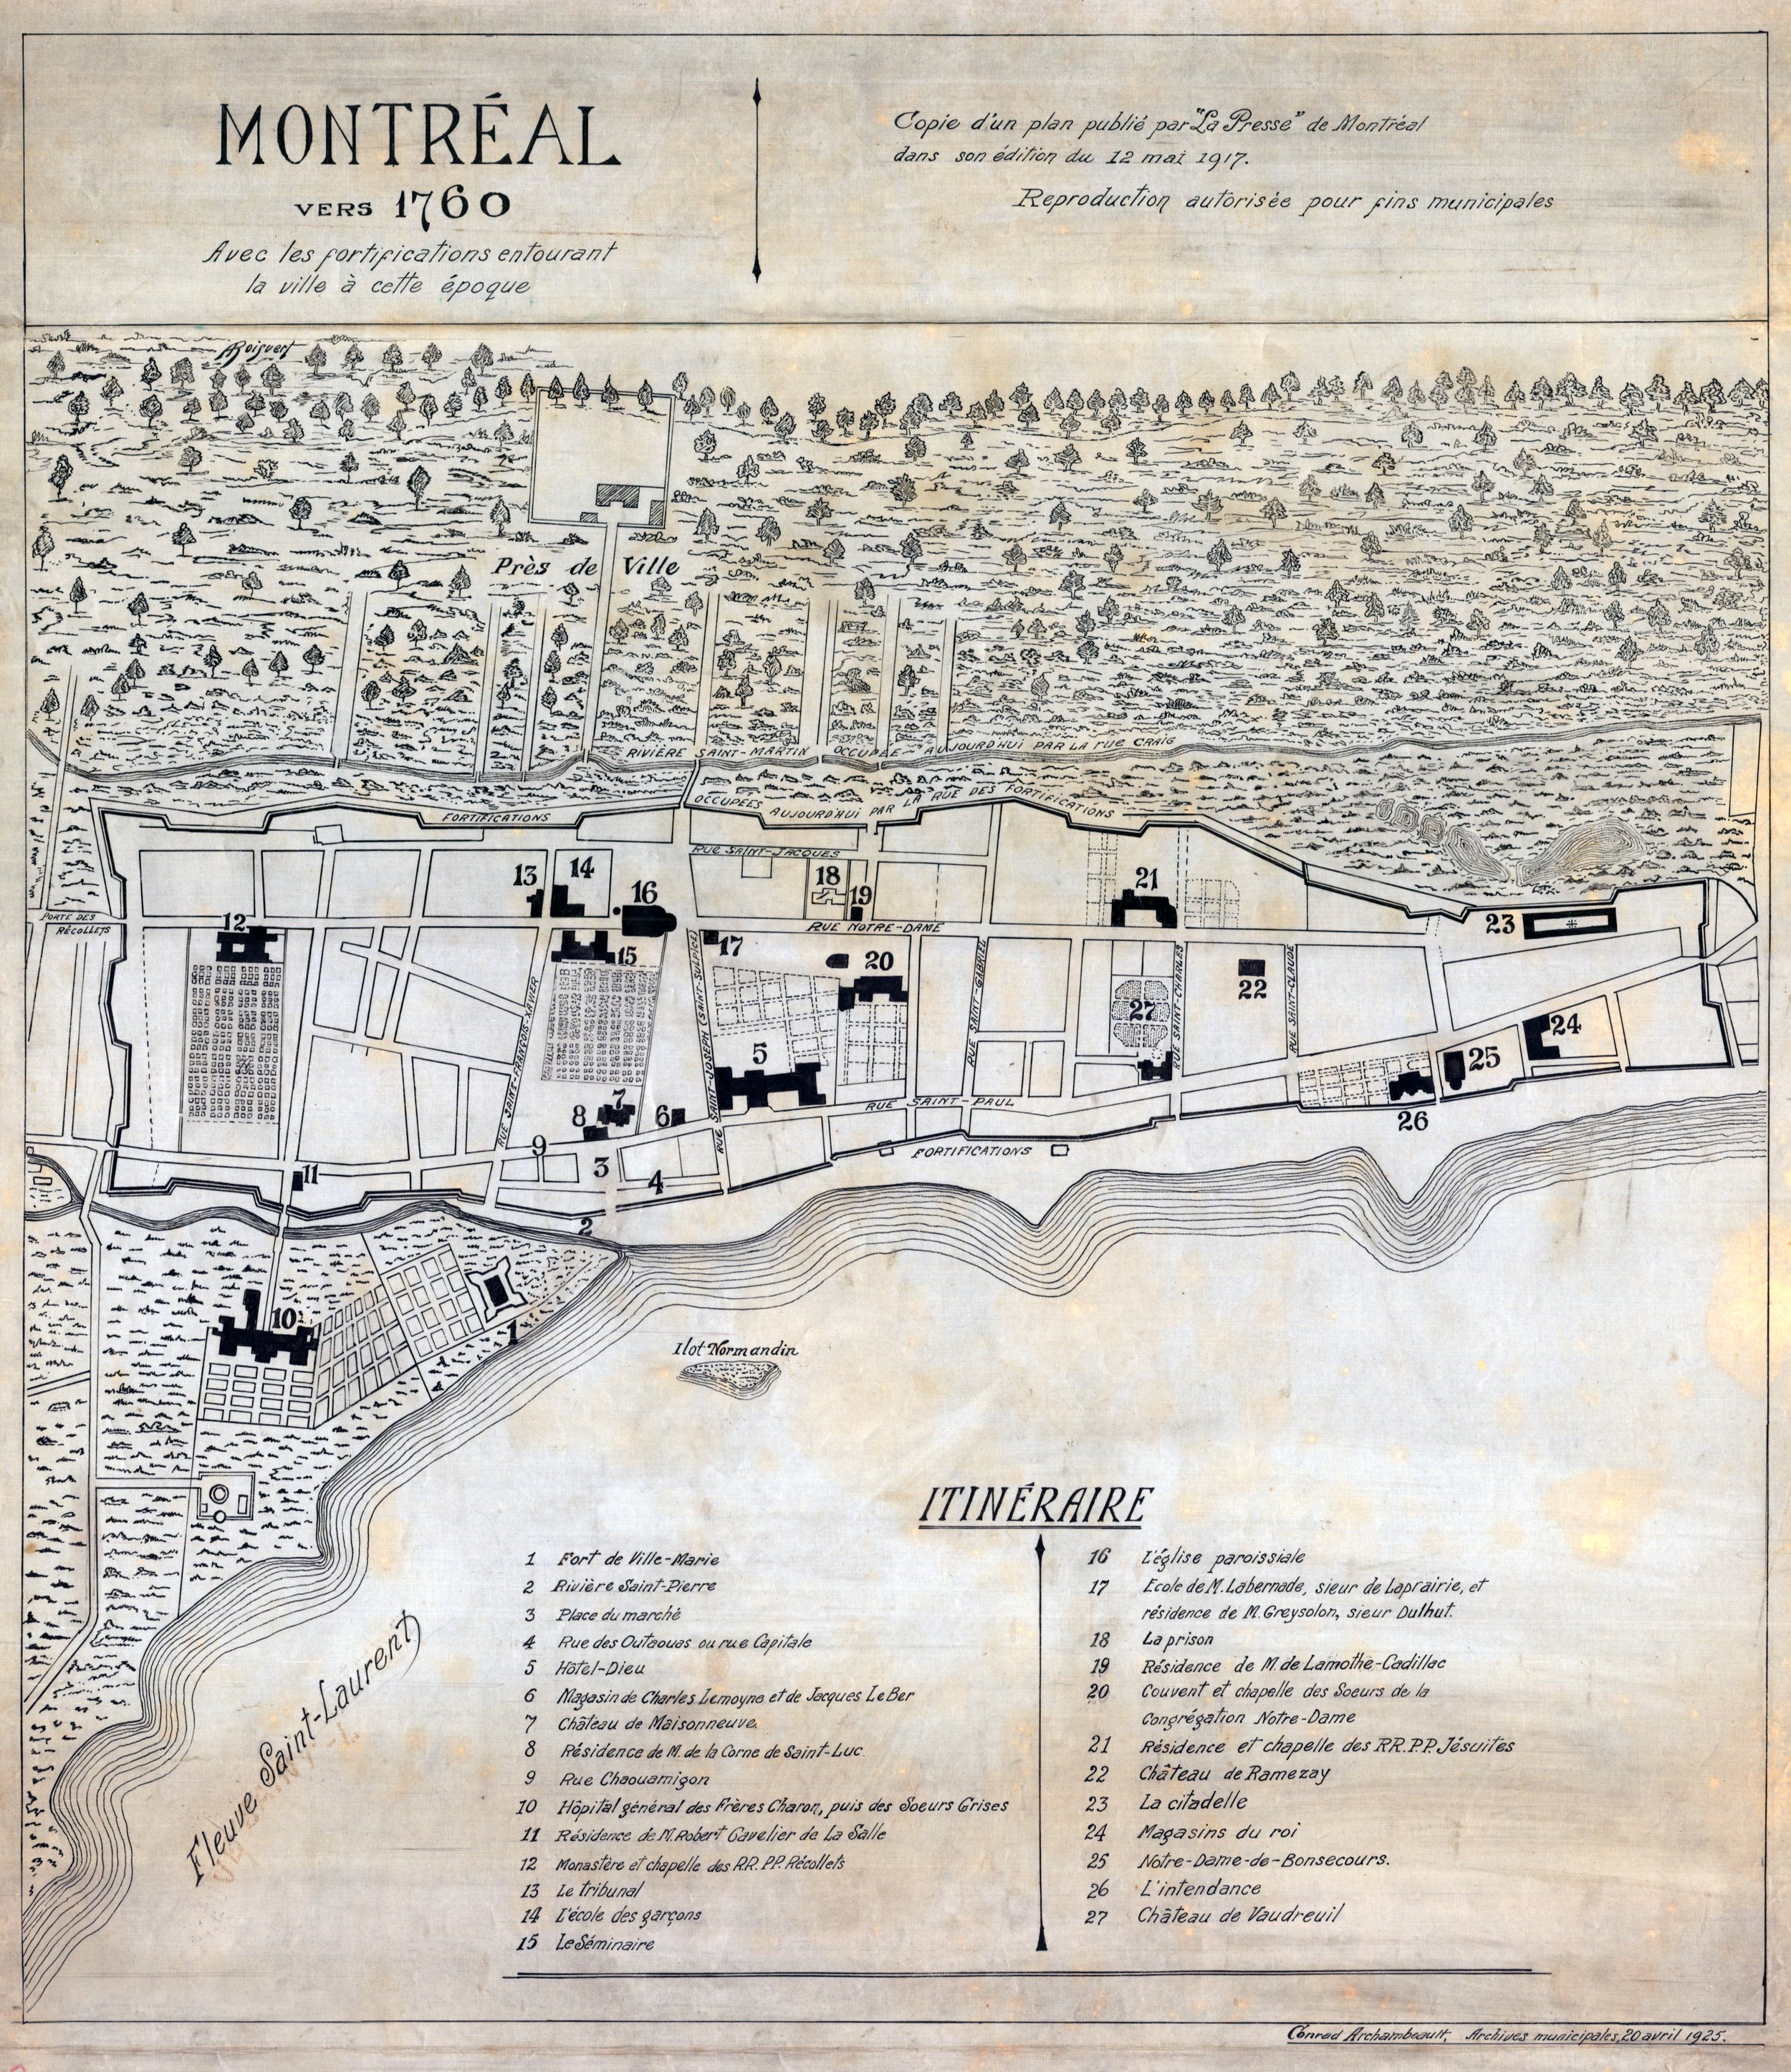 « Montréal vers 1760. Avec les fortifications entourant la ville à cette époque » (Archives de la Ville de Montréal). 